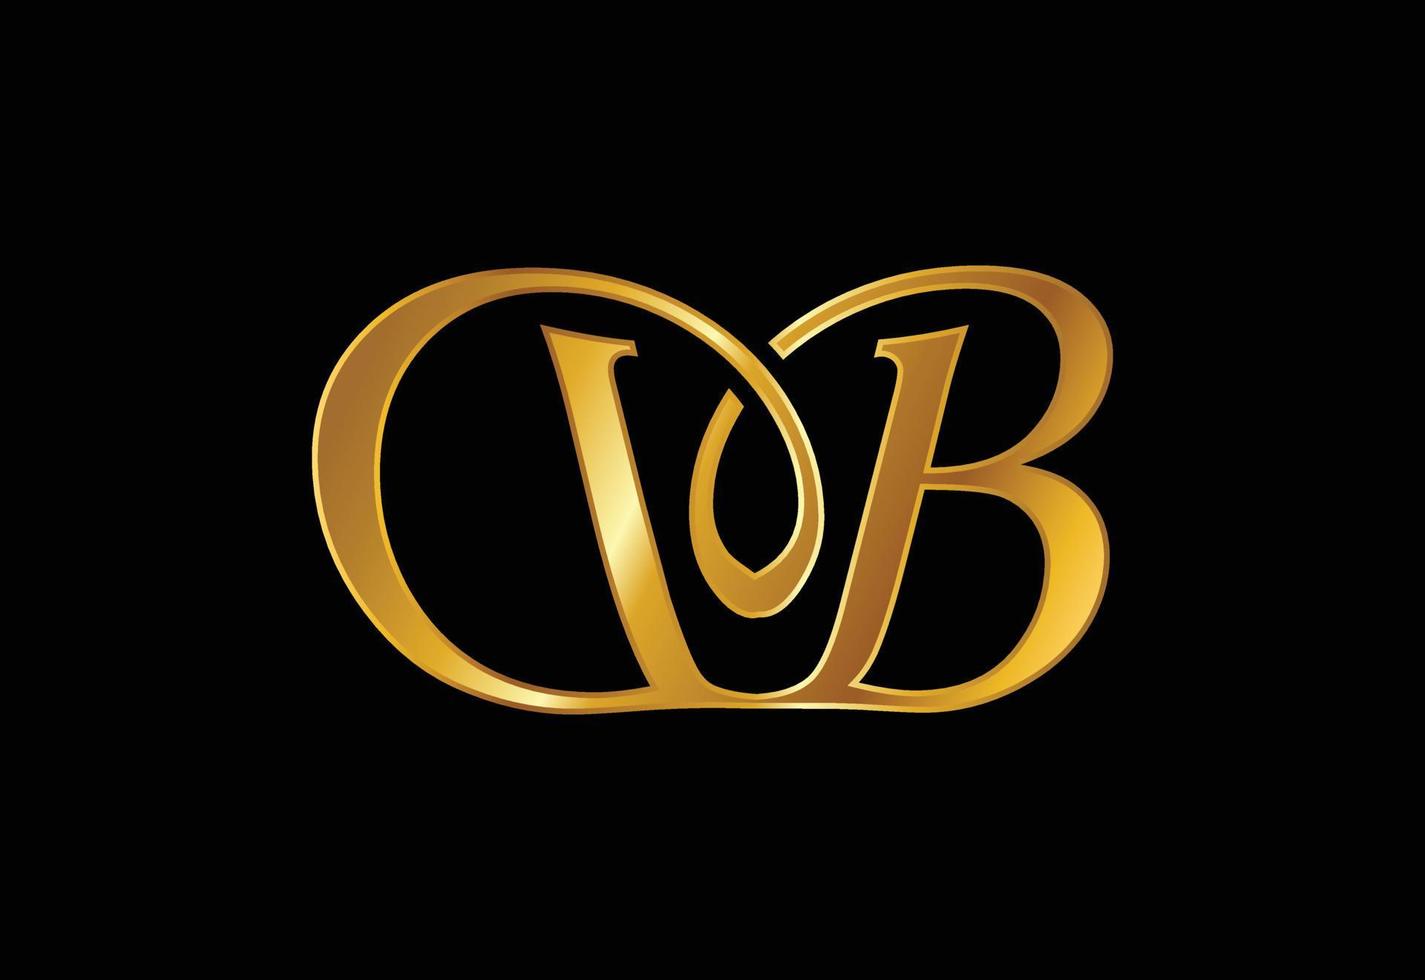 vetor de design de logotipo db letra inicial. símbolo gráfico do alfabeto para identidade de negócios corporativos